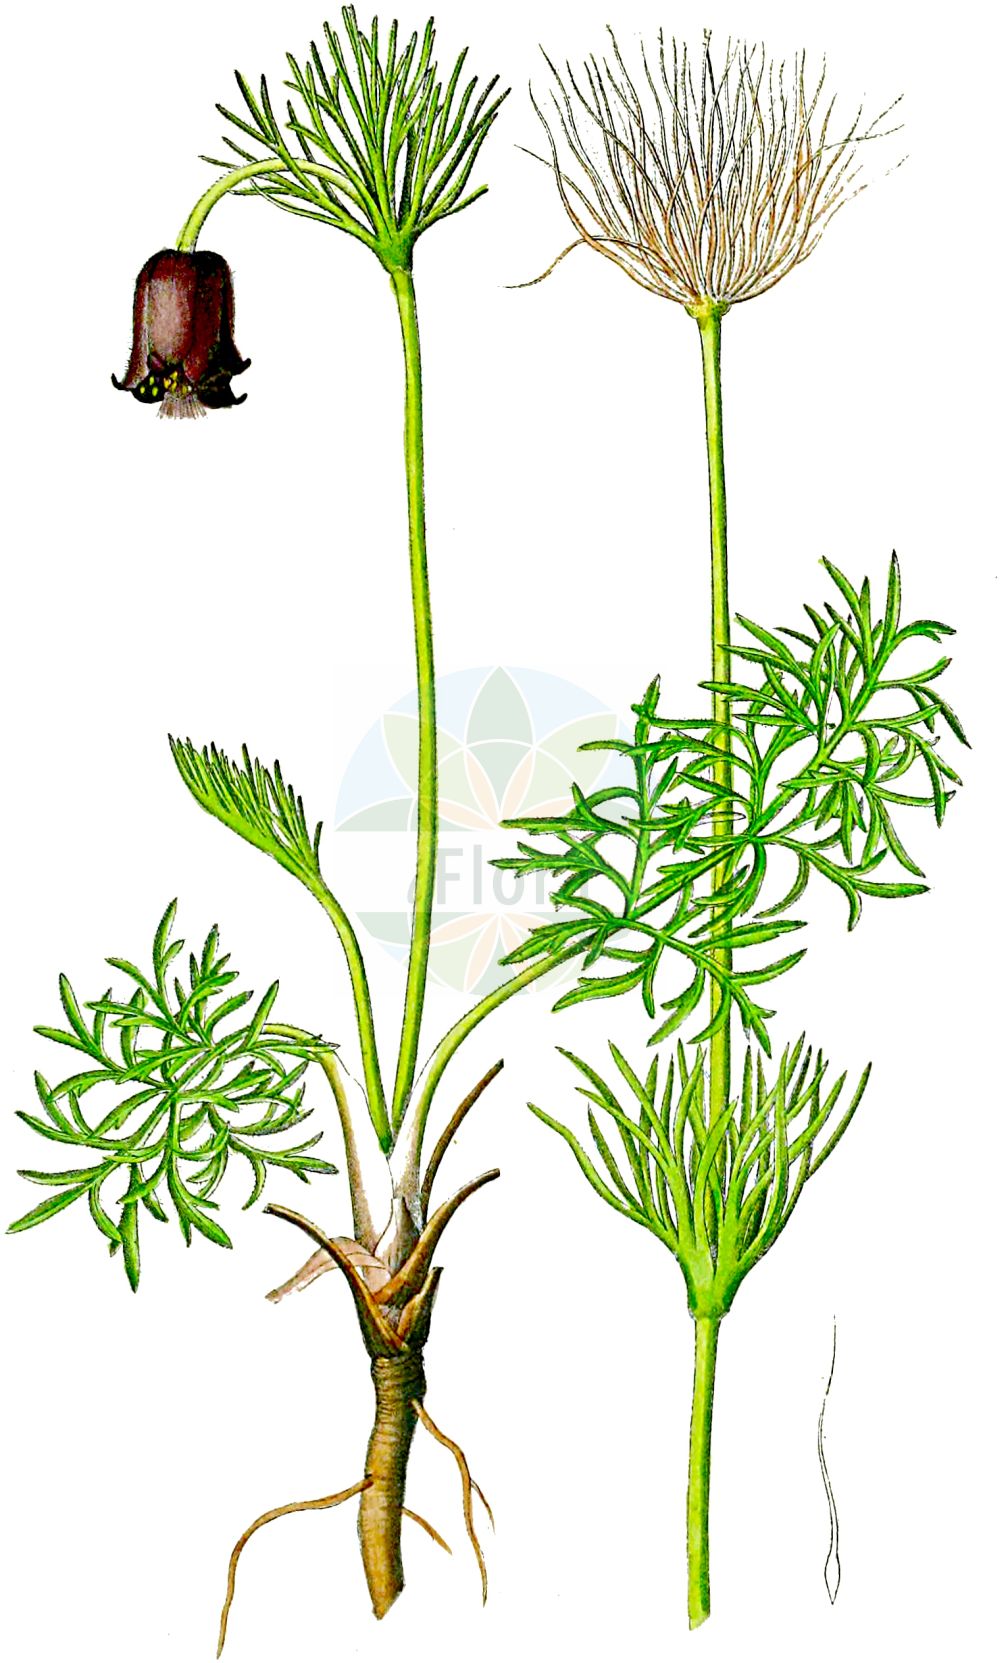 Historische Abbildung von Pulsatilla pratensis (Wiesen-Kuhschelle - Small Pasque Flower). Das Bild zeigt Blatt, Bluete, Frucht und Same. ---- Historical Drawing of Pulsatilla pratensis (Wiesen-Kuhschelle - Small Pasque Flower). The image is showing leaf, flower, fruit and seed.(Pulsatilla pratensis,Wiesen-Kuhschelle,Small Pasque Flower,Anemone pratensis,Pulsatilla bohemica,Pulsatilla nigricans,Pulsatilla pratensis,Pulsatilla zimmermannii,Wiesen-Kuhschelle,Dunkle Wiesen-Kuhschelle,Gewoehnliche Wiesen-Kuhschelle,Osterglocke,Schwarze Kuechenschelle,Schwarzviolette Kuechenschelle,Small Pasque Flower,Pulsatilla,Kuhschelle,Pasqueflower,Ranunculaceae,Hahnenfußgewächse,Buttercup family,Blatt,Bluete,Frucht,Same,leaf,flower,fruit,seed,Dietrich (1833-1844))